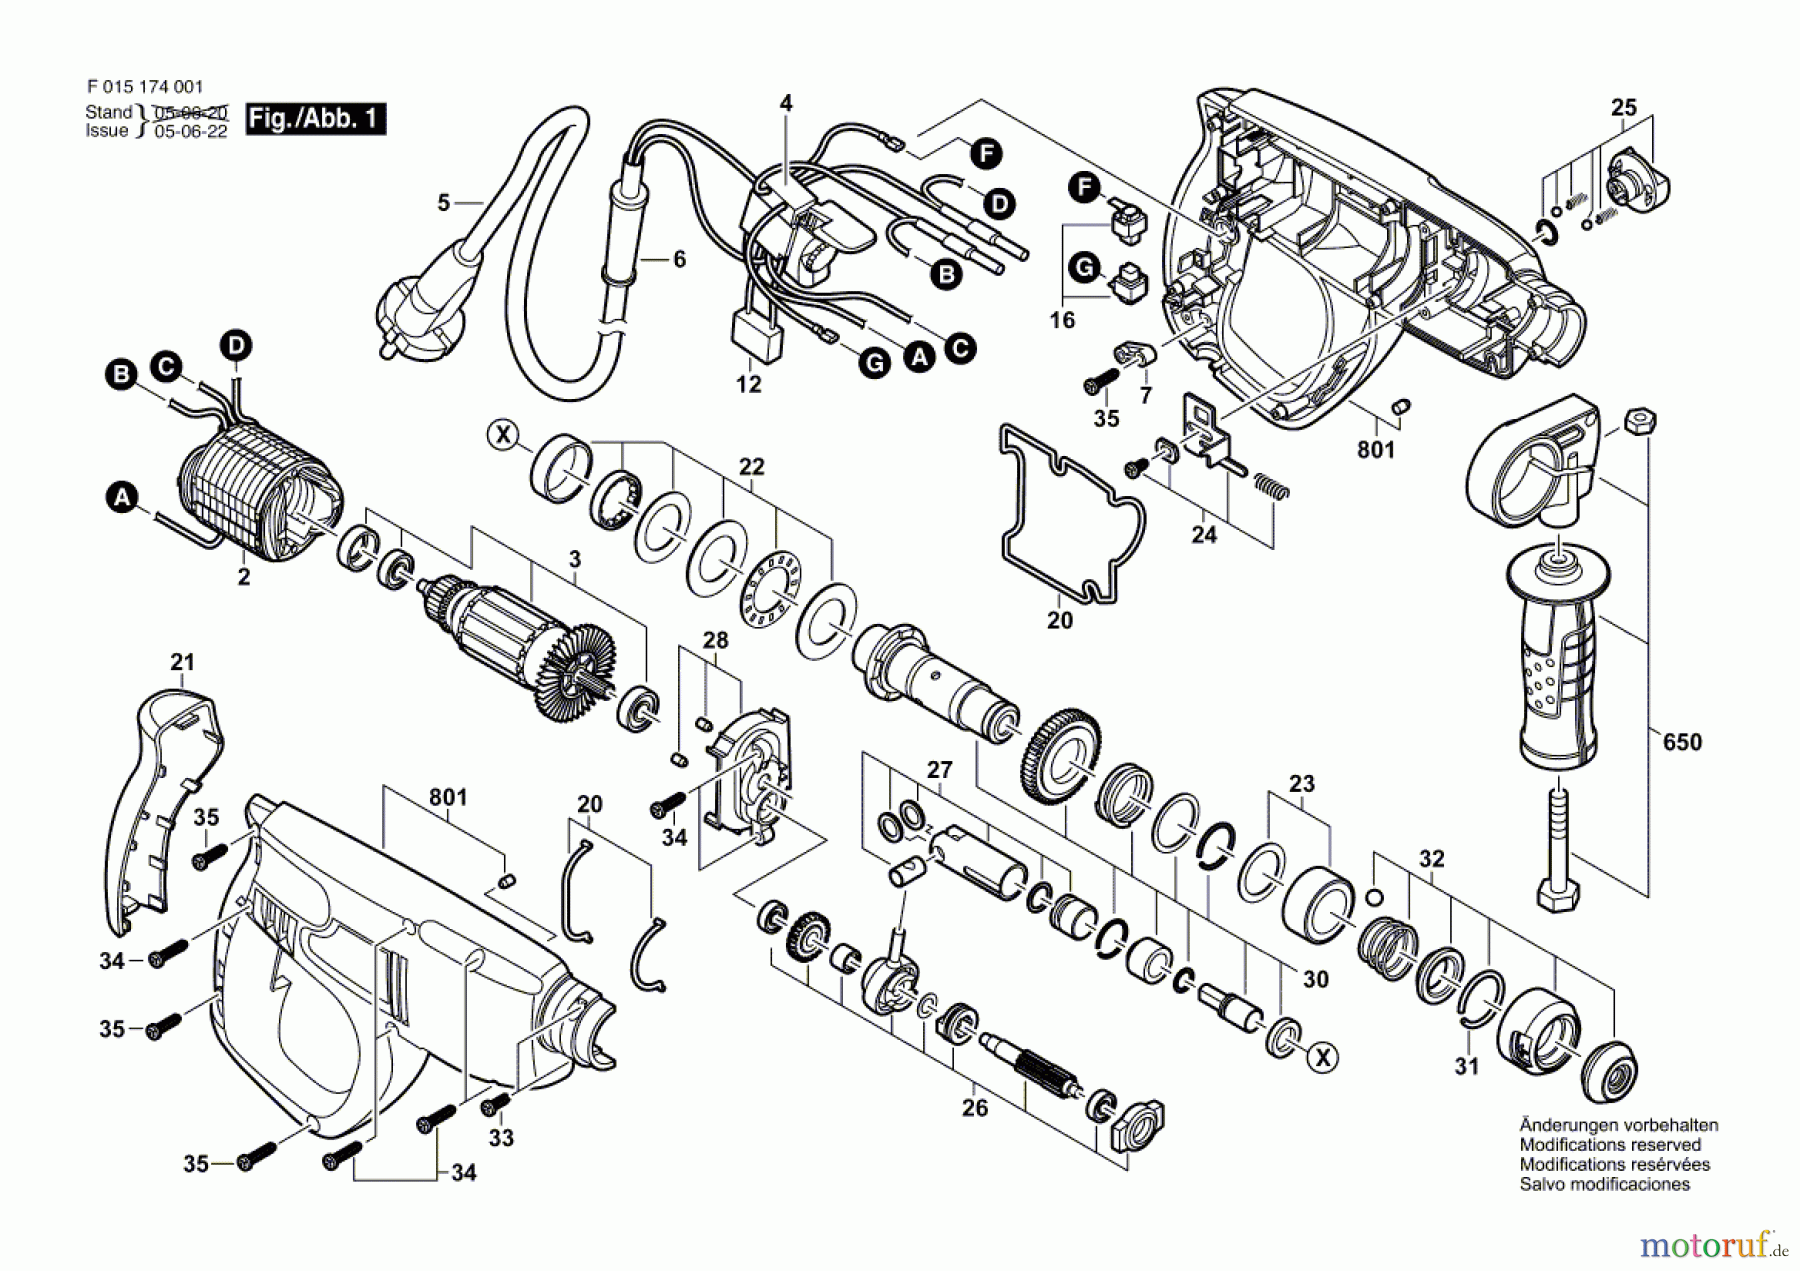  Bosch Werkzeug Bohrhammer 1740 Seite 1